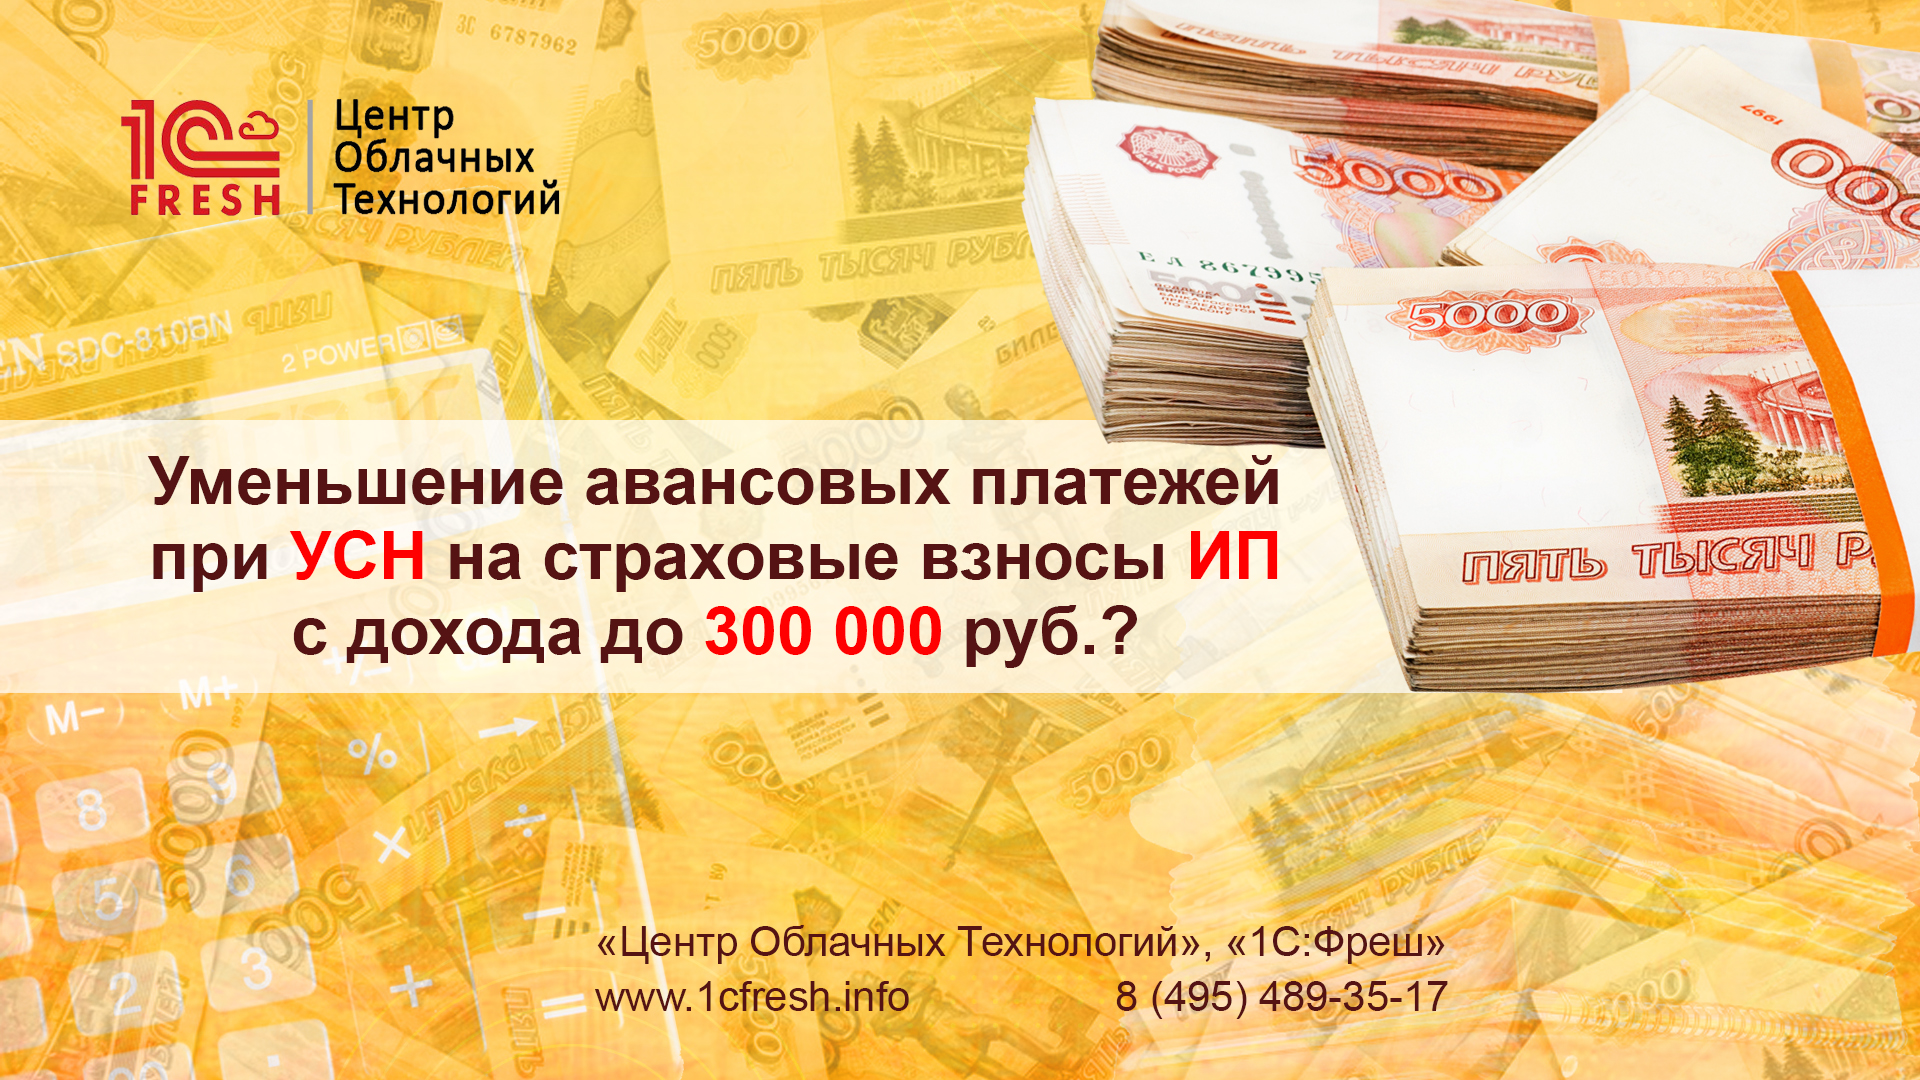 Авансовые платежи при УСН до 300 тыс.руб. | Блог «Центр облачных технологий»